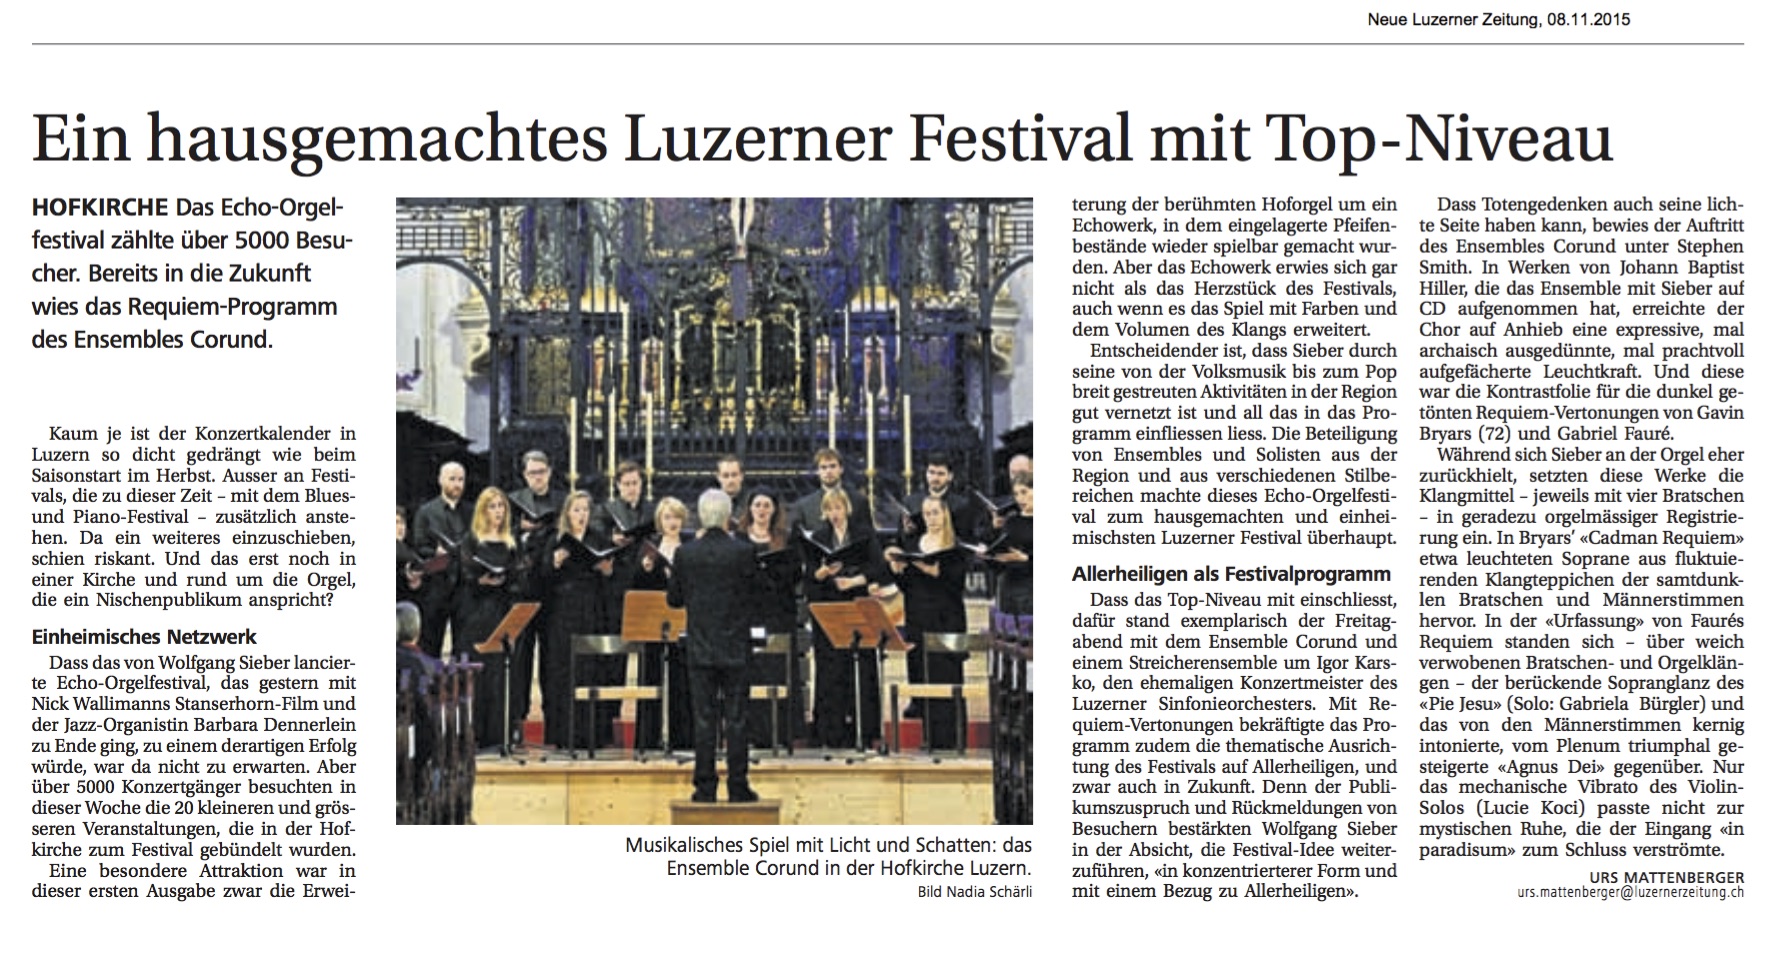 Luzerner Zeitung, 6.11.2016